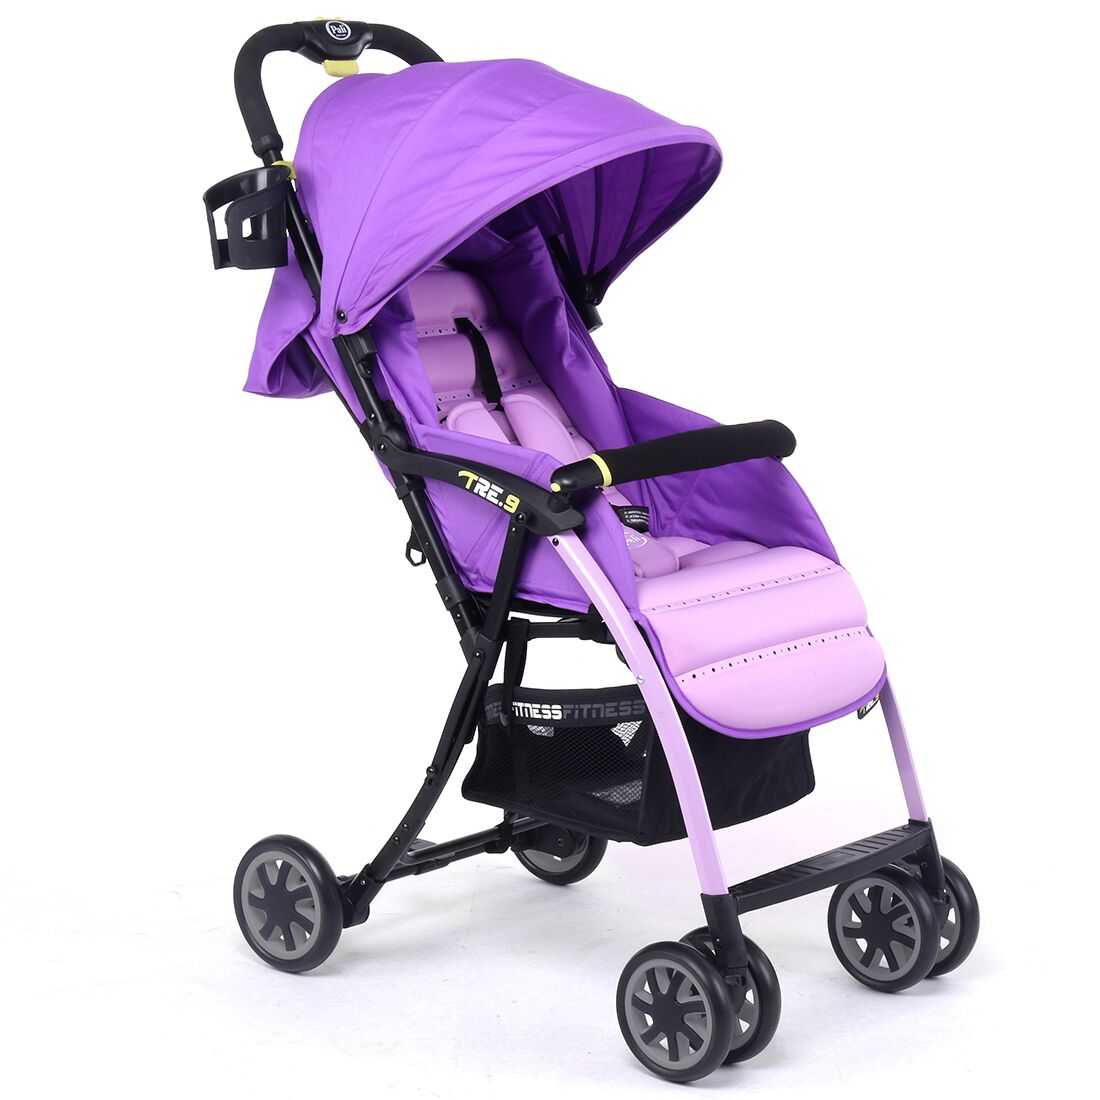 Pali Ultra Lightweight Tre.9 Stroller Fitness Fashion In Rio Purple - Pali Design 13901rio